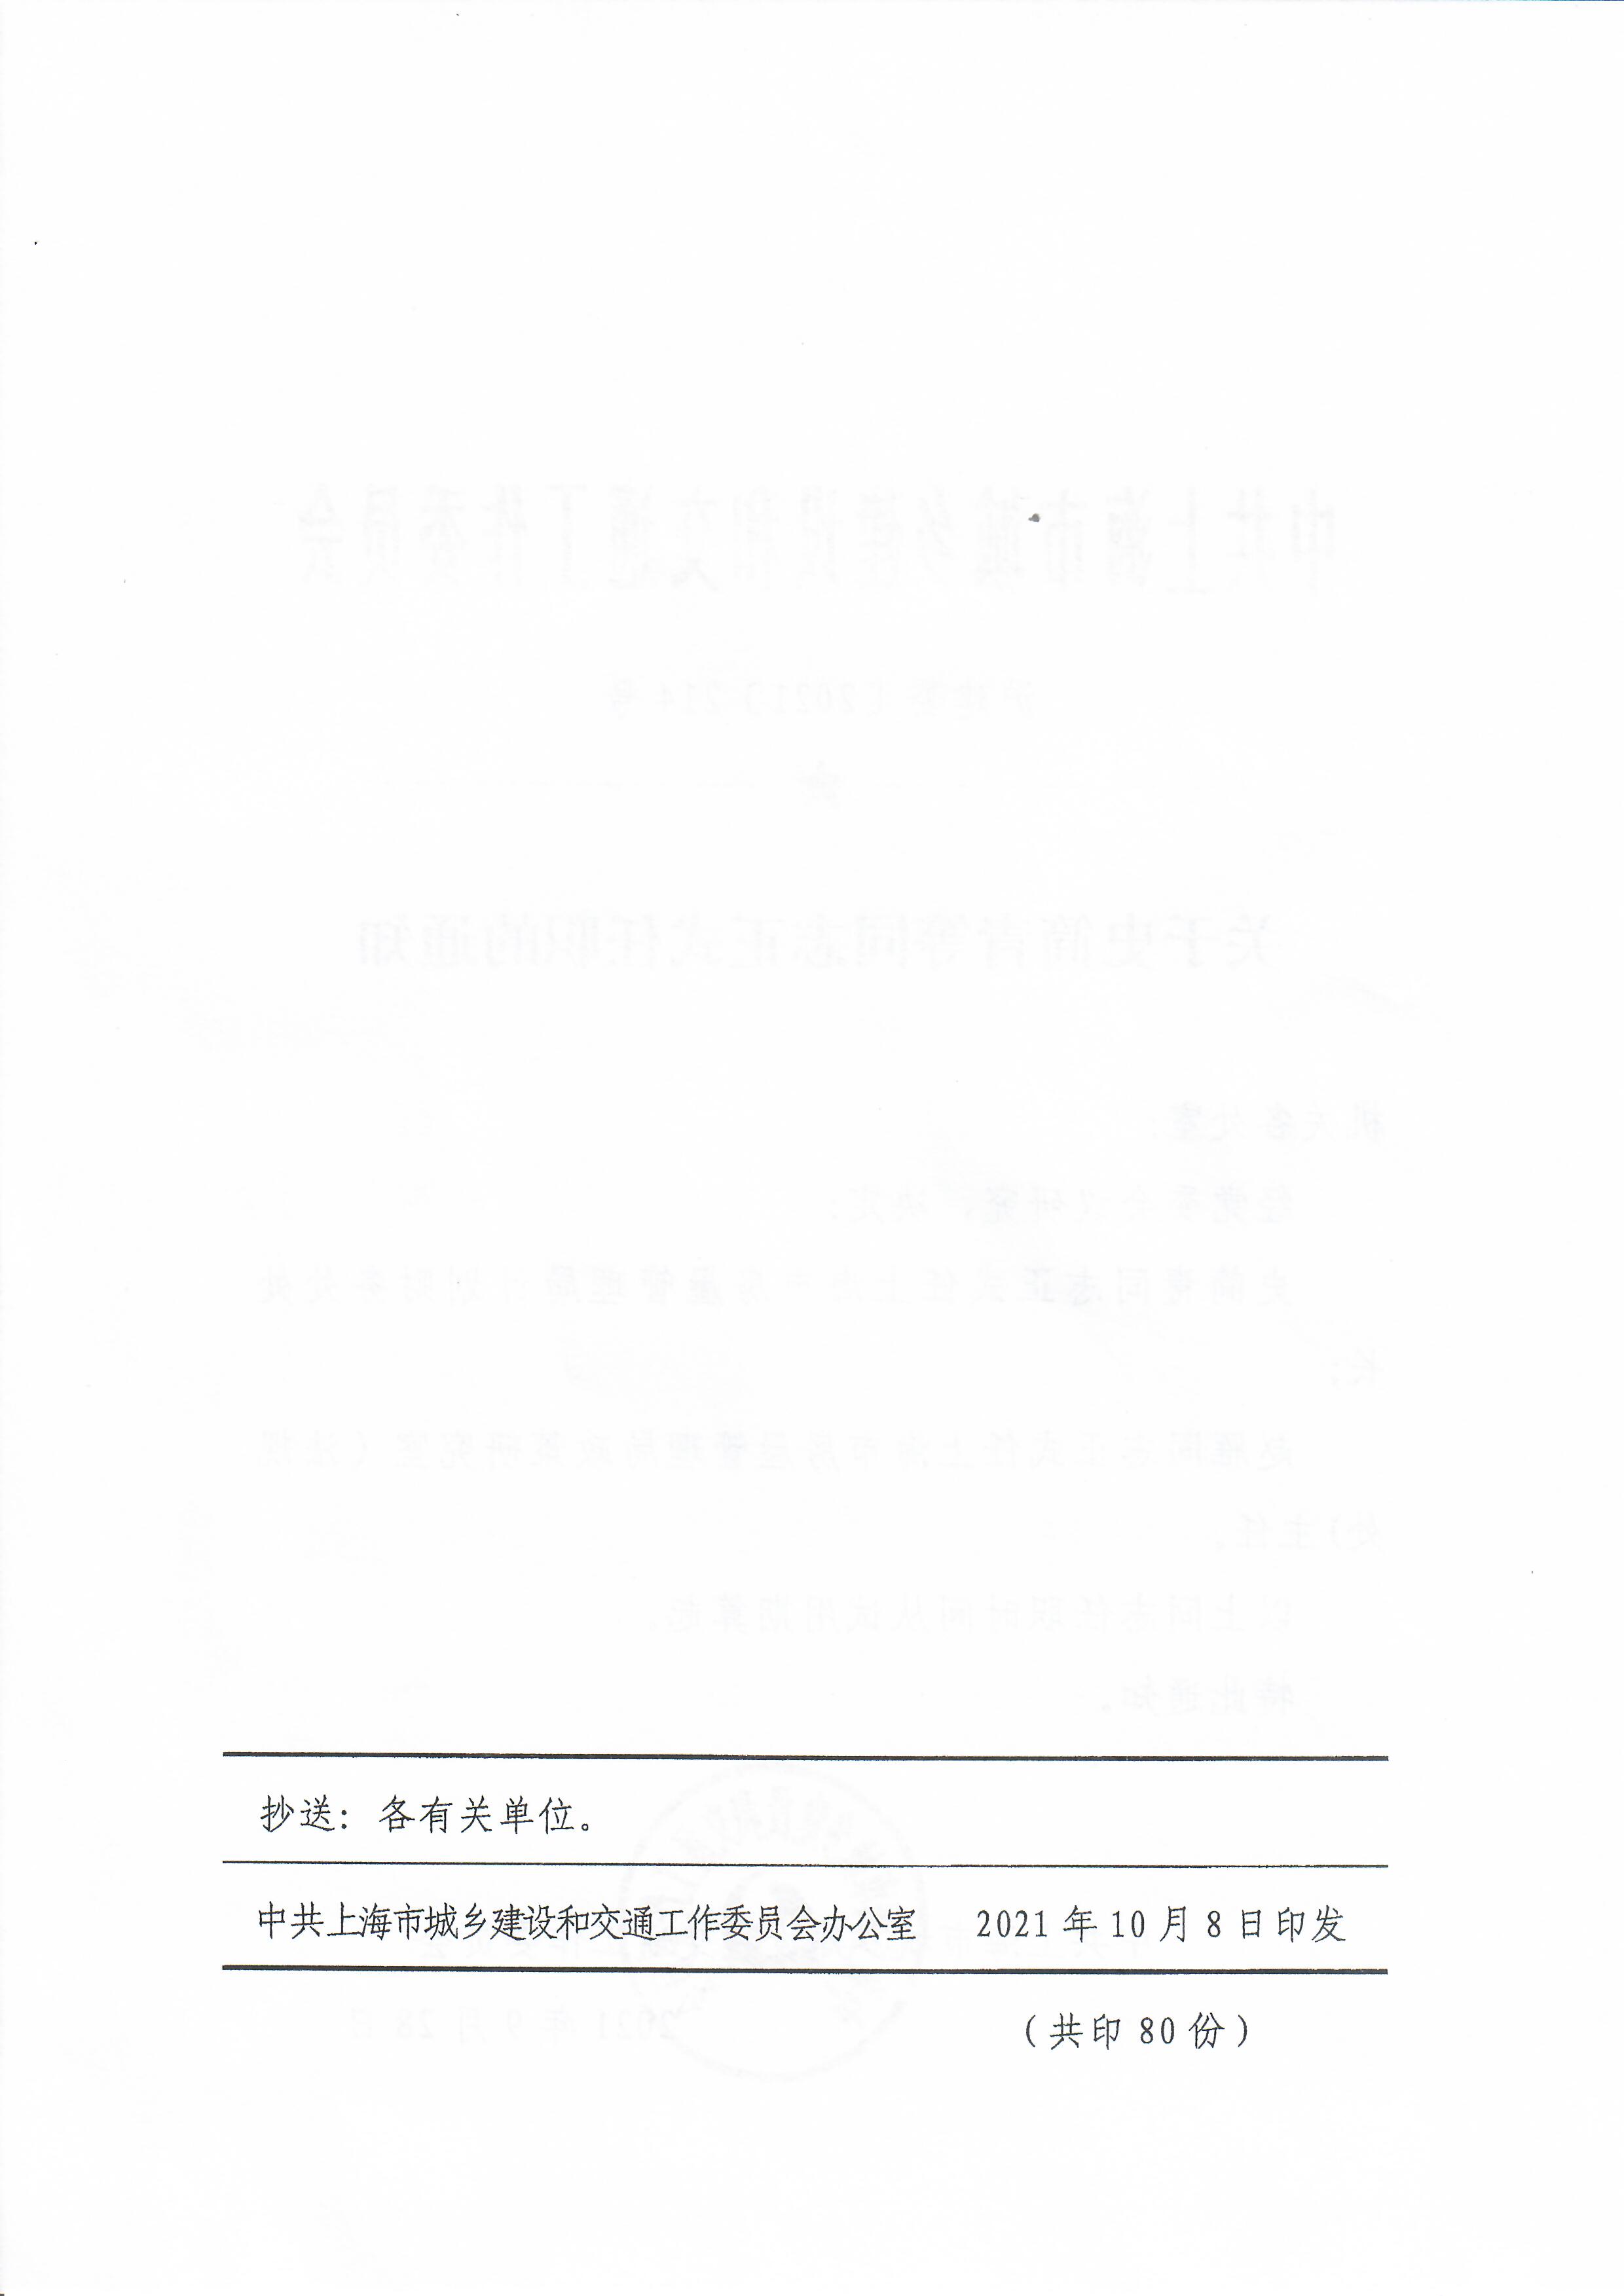 关于史简青登同志正式任职的通知 (2).jpg